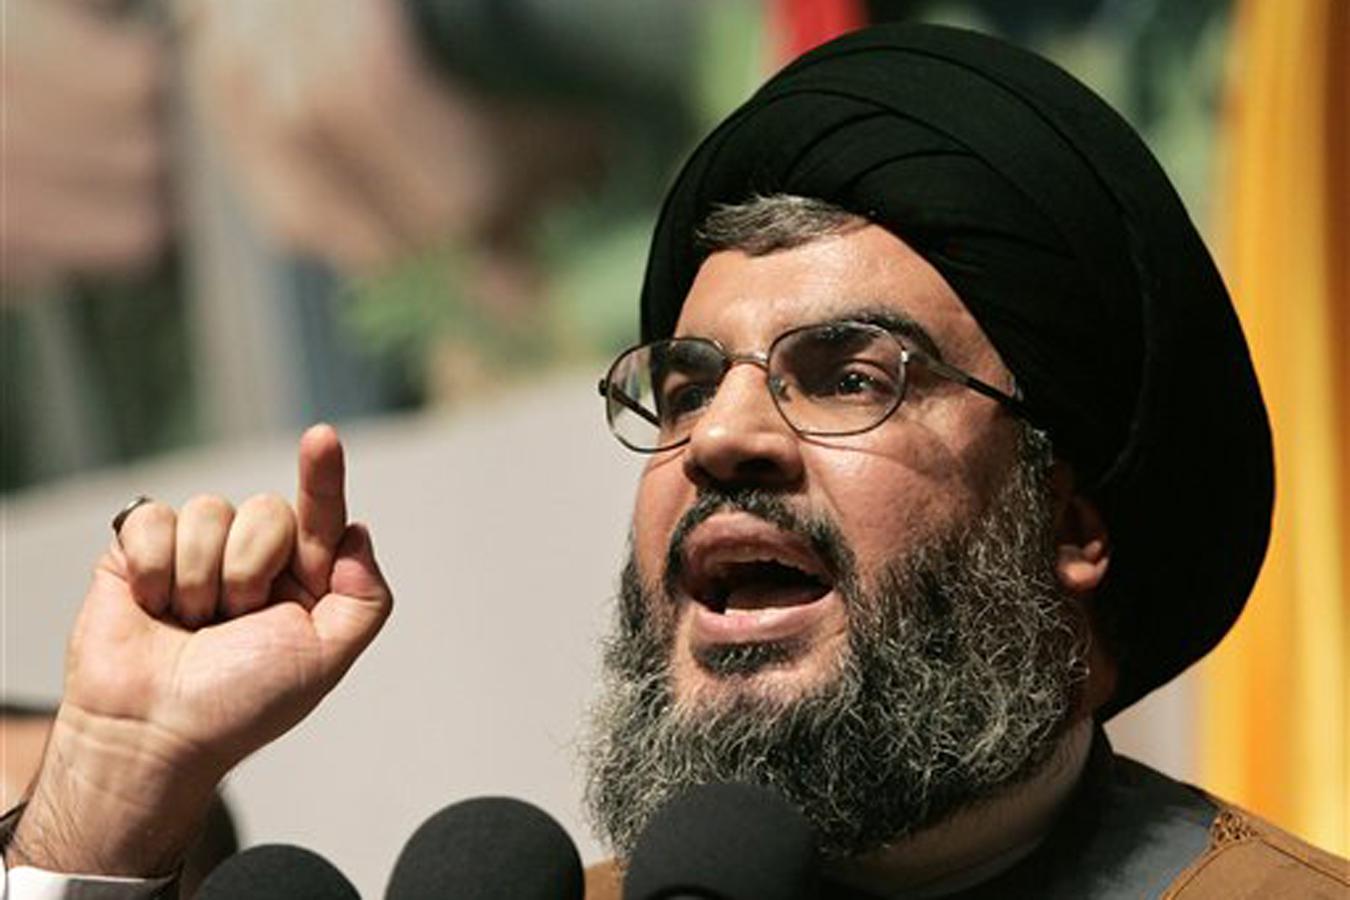 وكالة الأنباء اللبنانية: حزب الله يعلن دعم ترشيح ميشال عون لرئاسة الجمهورية في لبنان